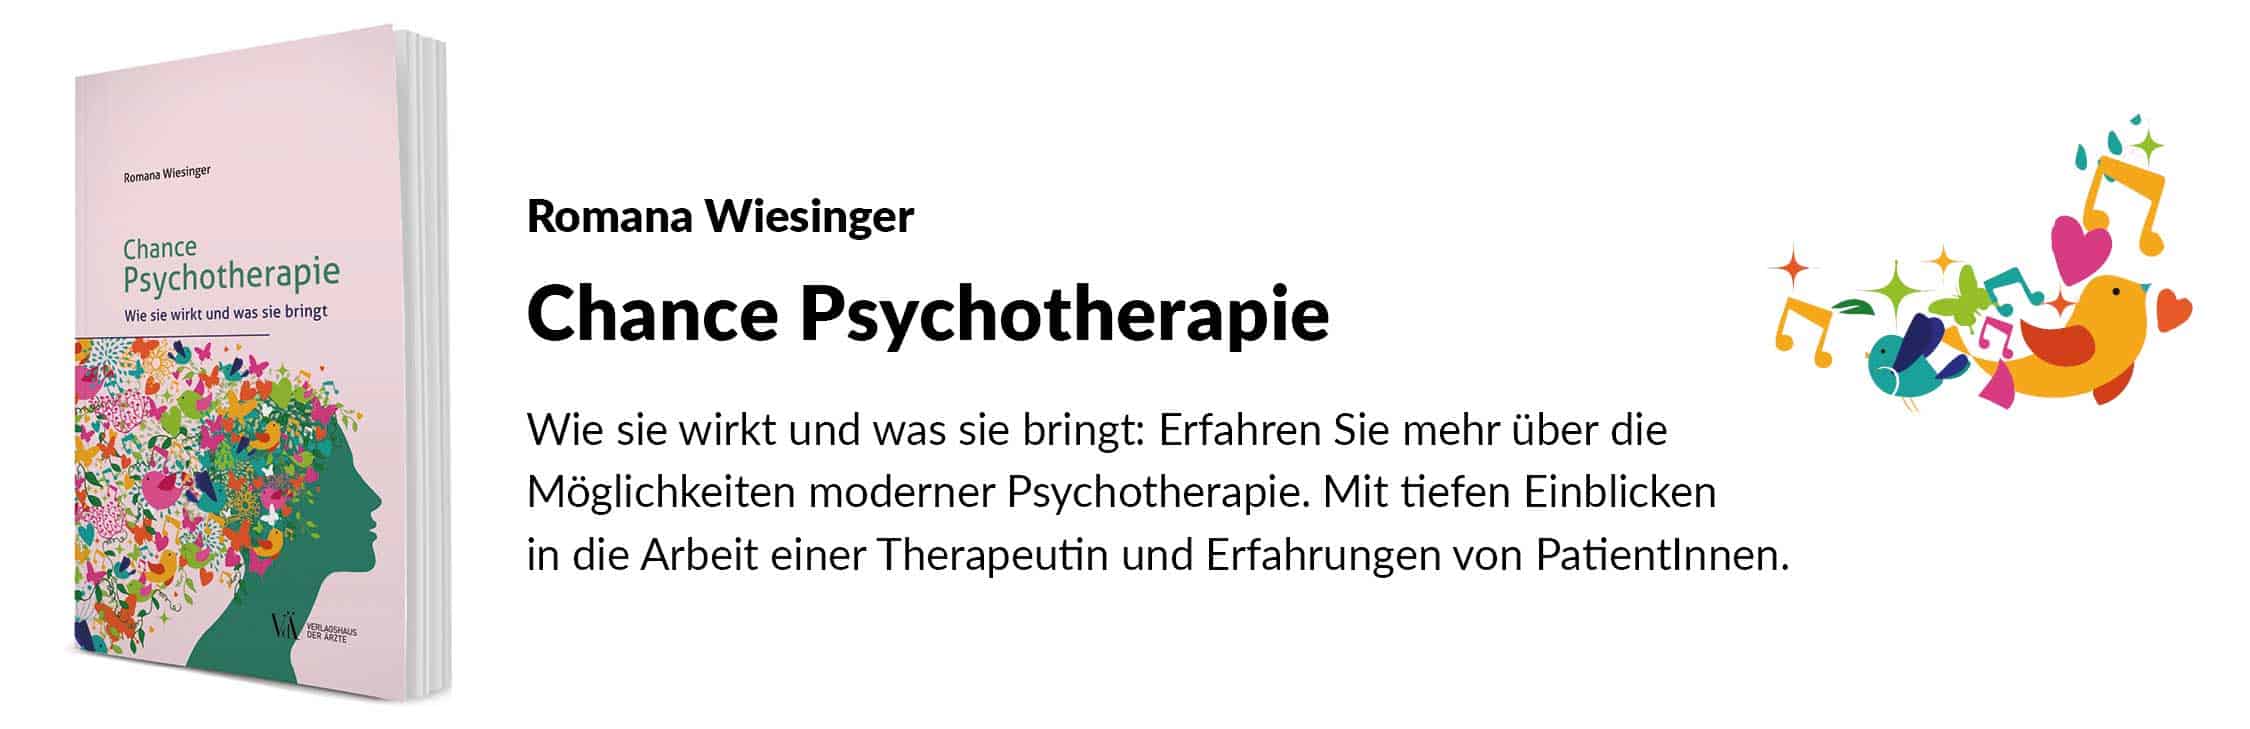 Chance Psychotherapie - Slider Desktop